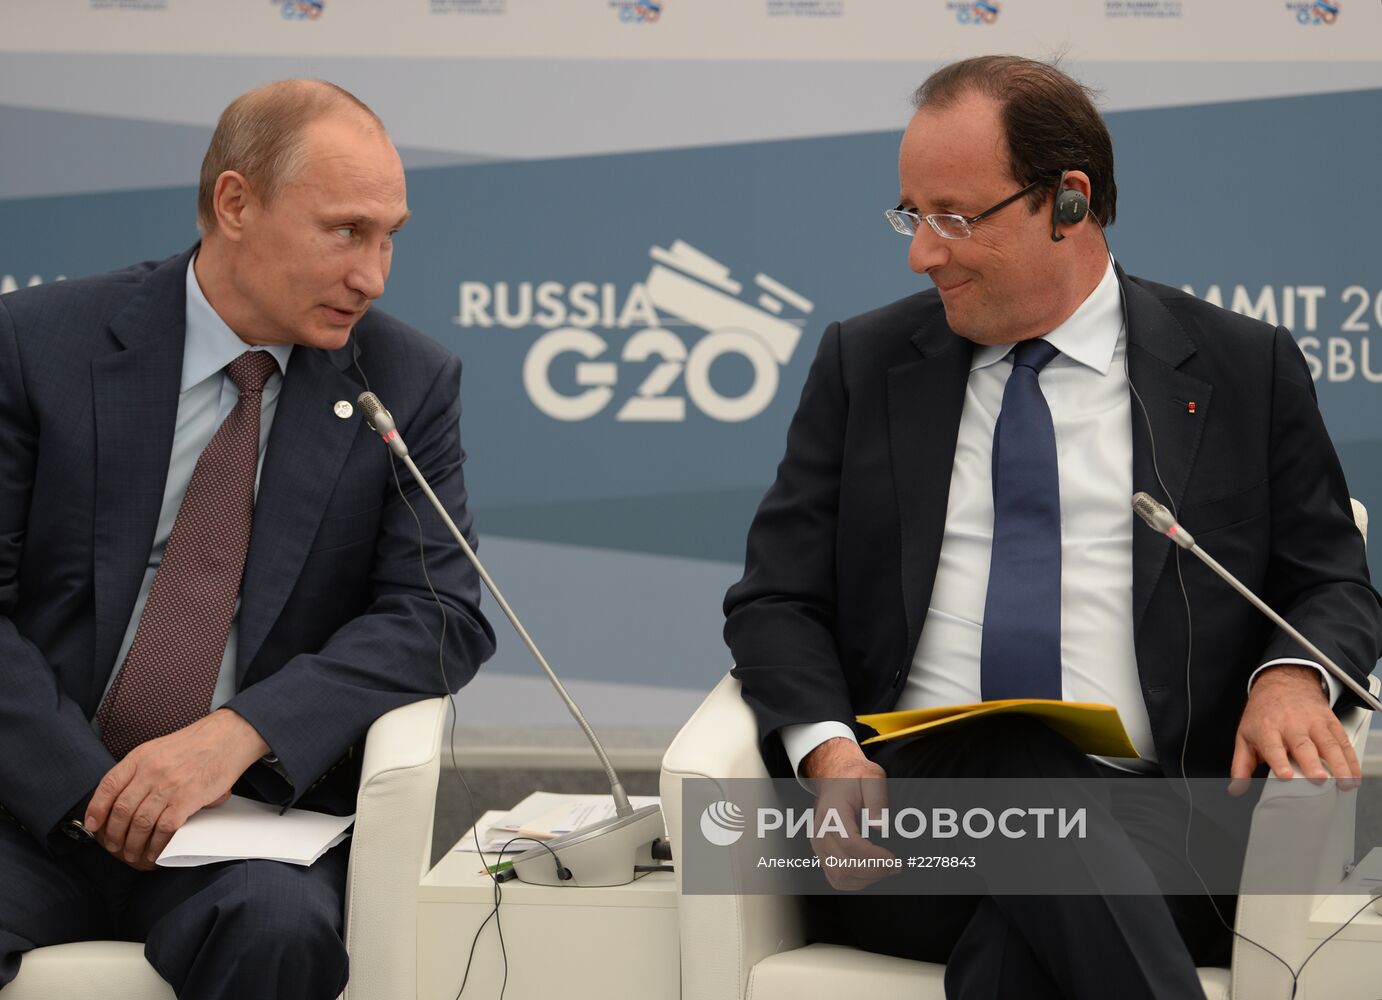 Встреча В. Путина с представителями Business 20 и Labour 20